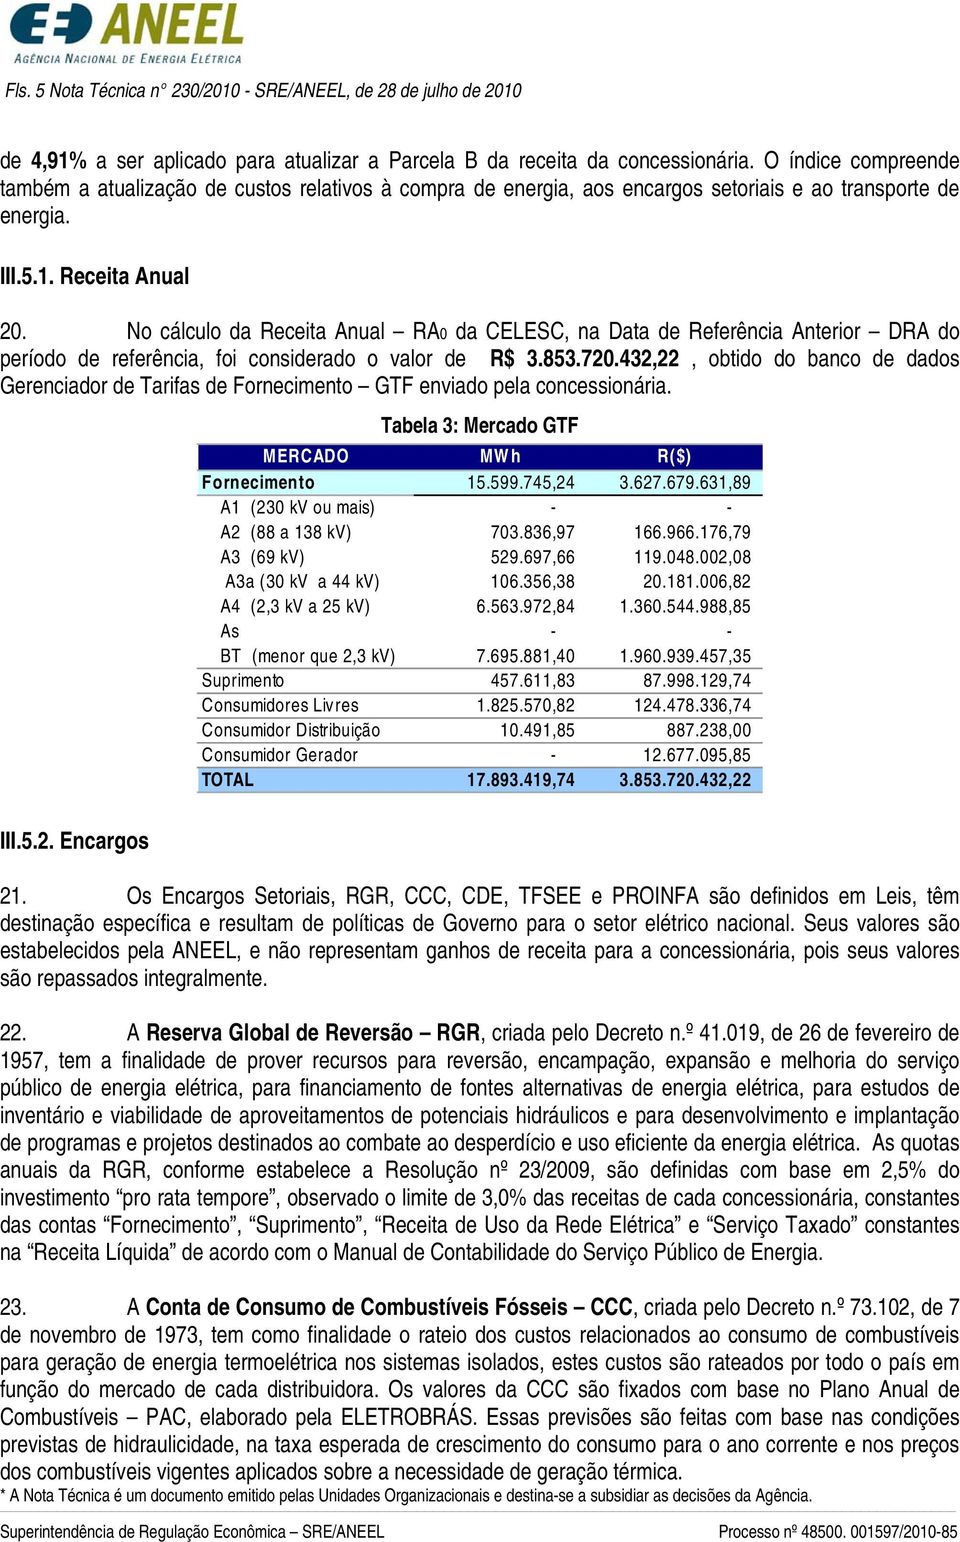 No cálculo da Receita Anual RA0 da CELESC, na Data de Referência Anterior DRA do período de referência, foi considerado o valor de R$ 3.853.720.